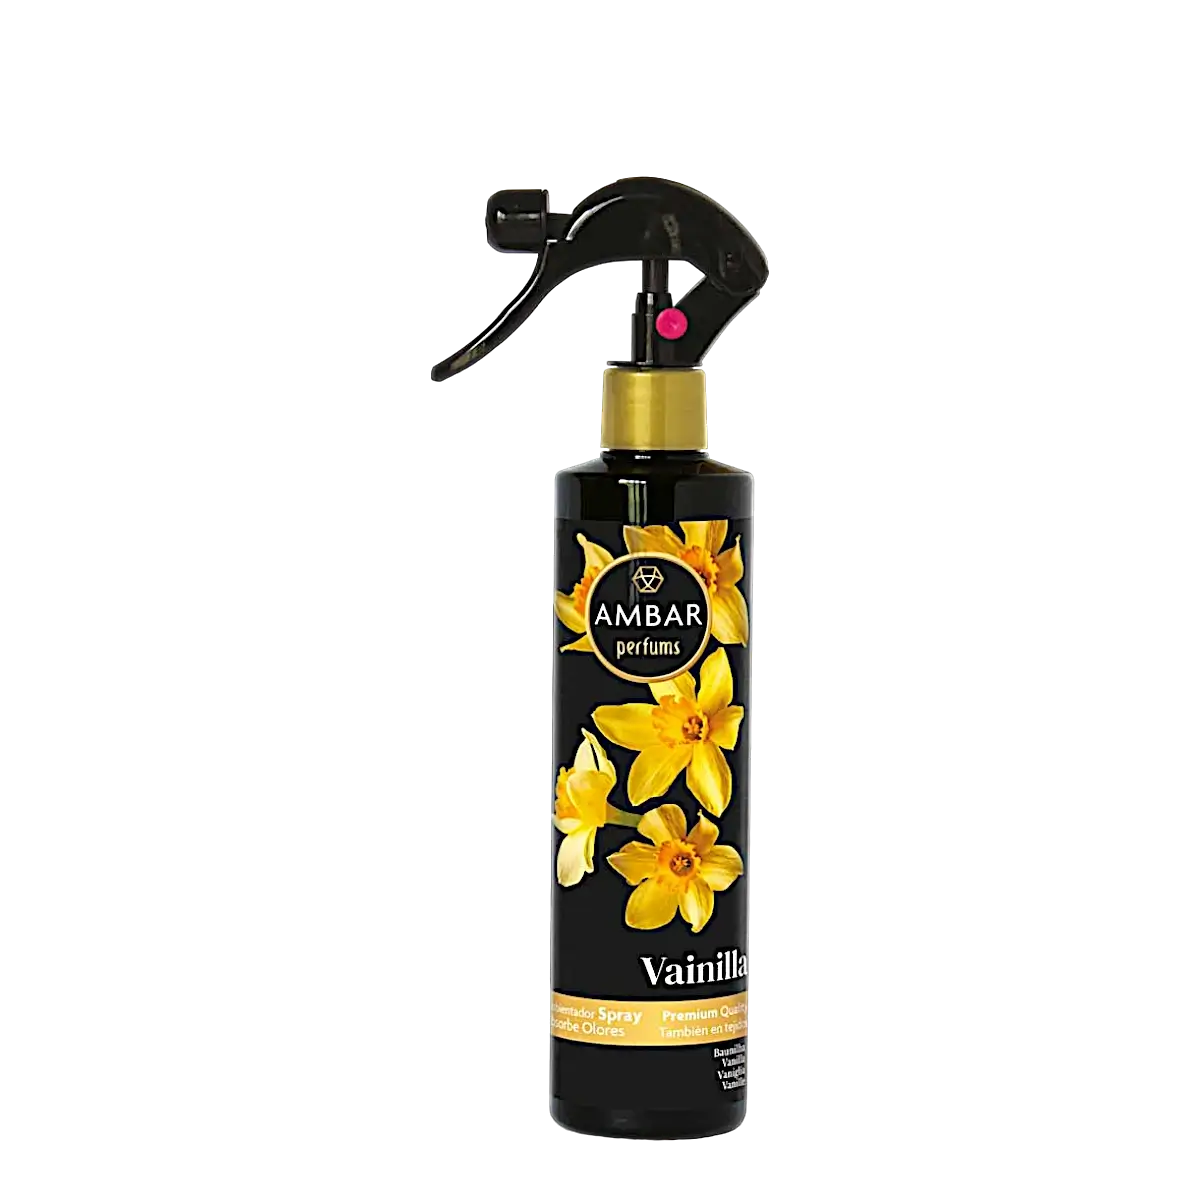 alt="Spray de Baunilha marca Âmbar - Spray com aroma de baunilha da marca Âmbar"